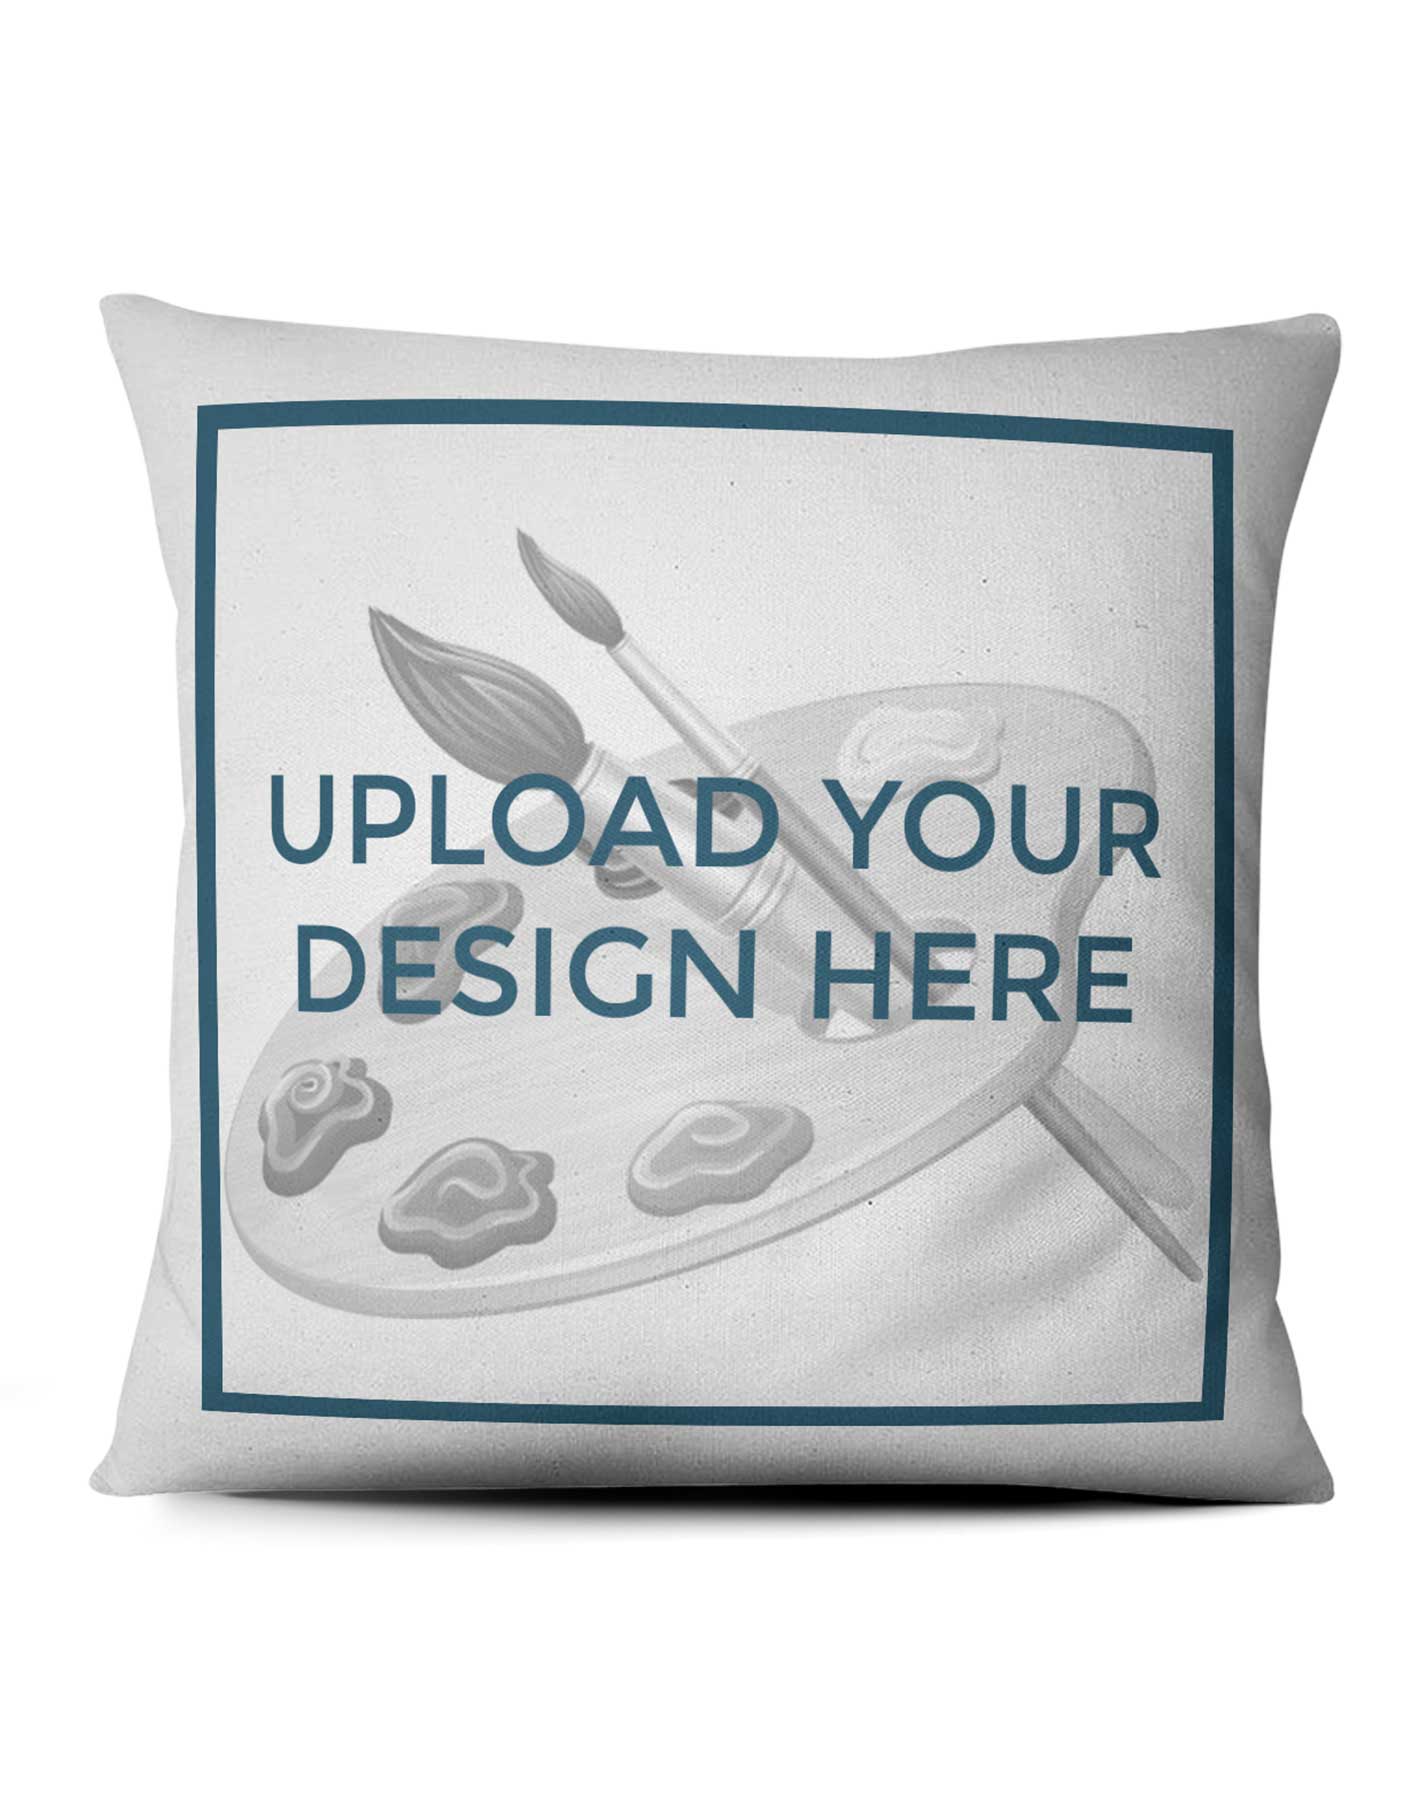 design own pillow